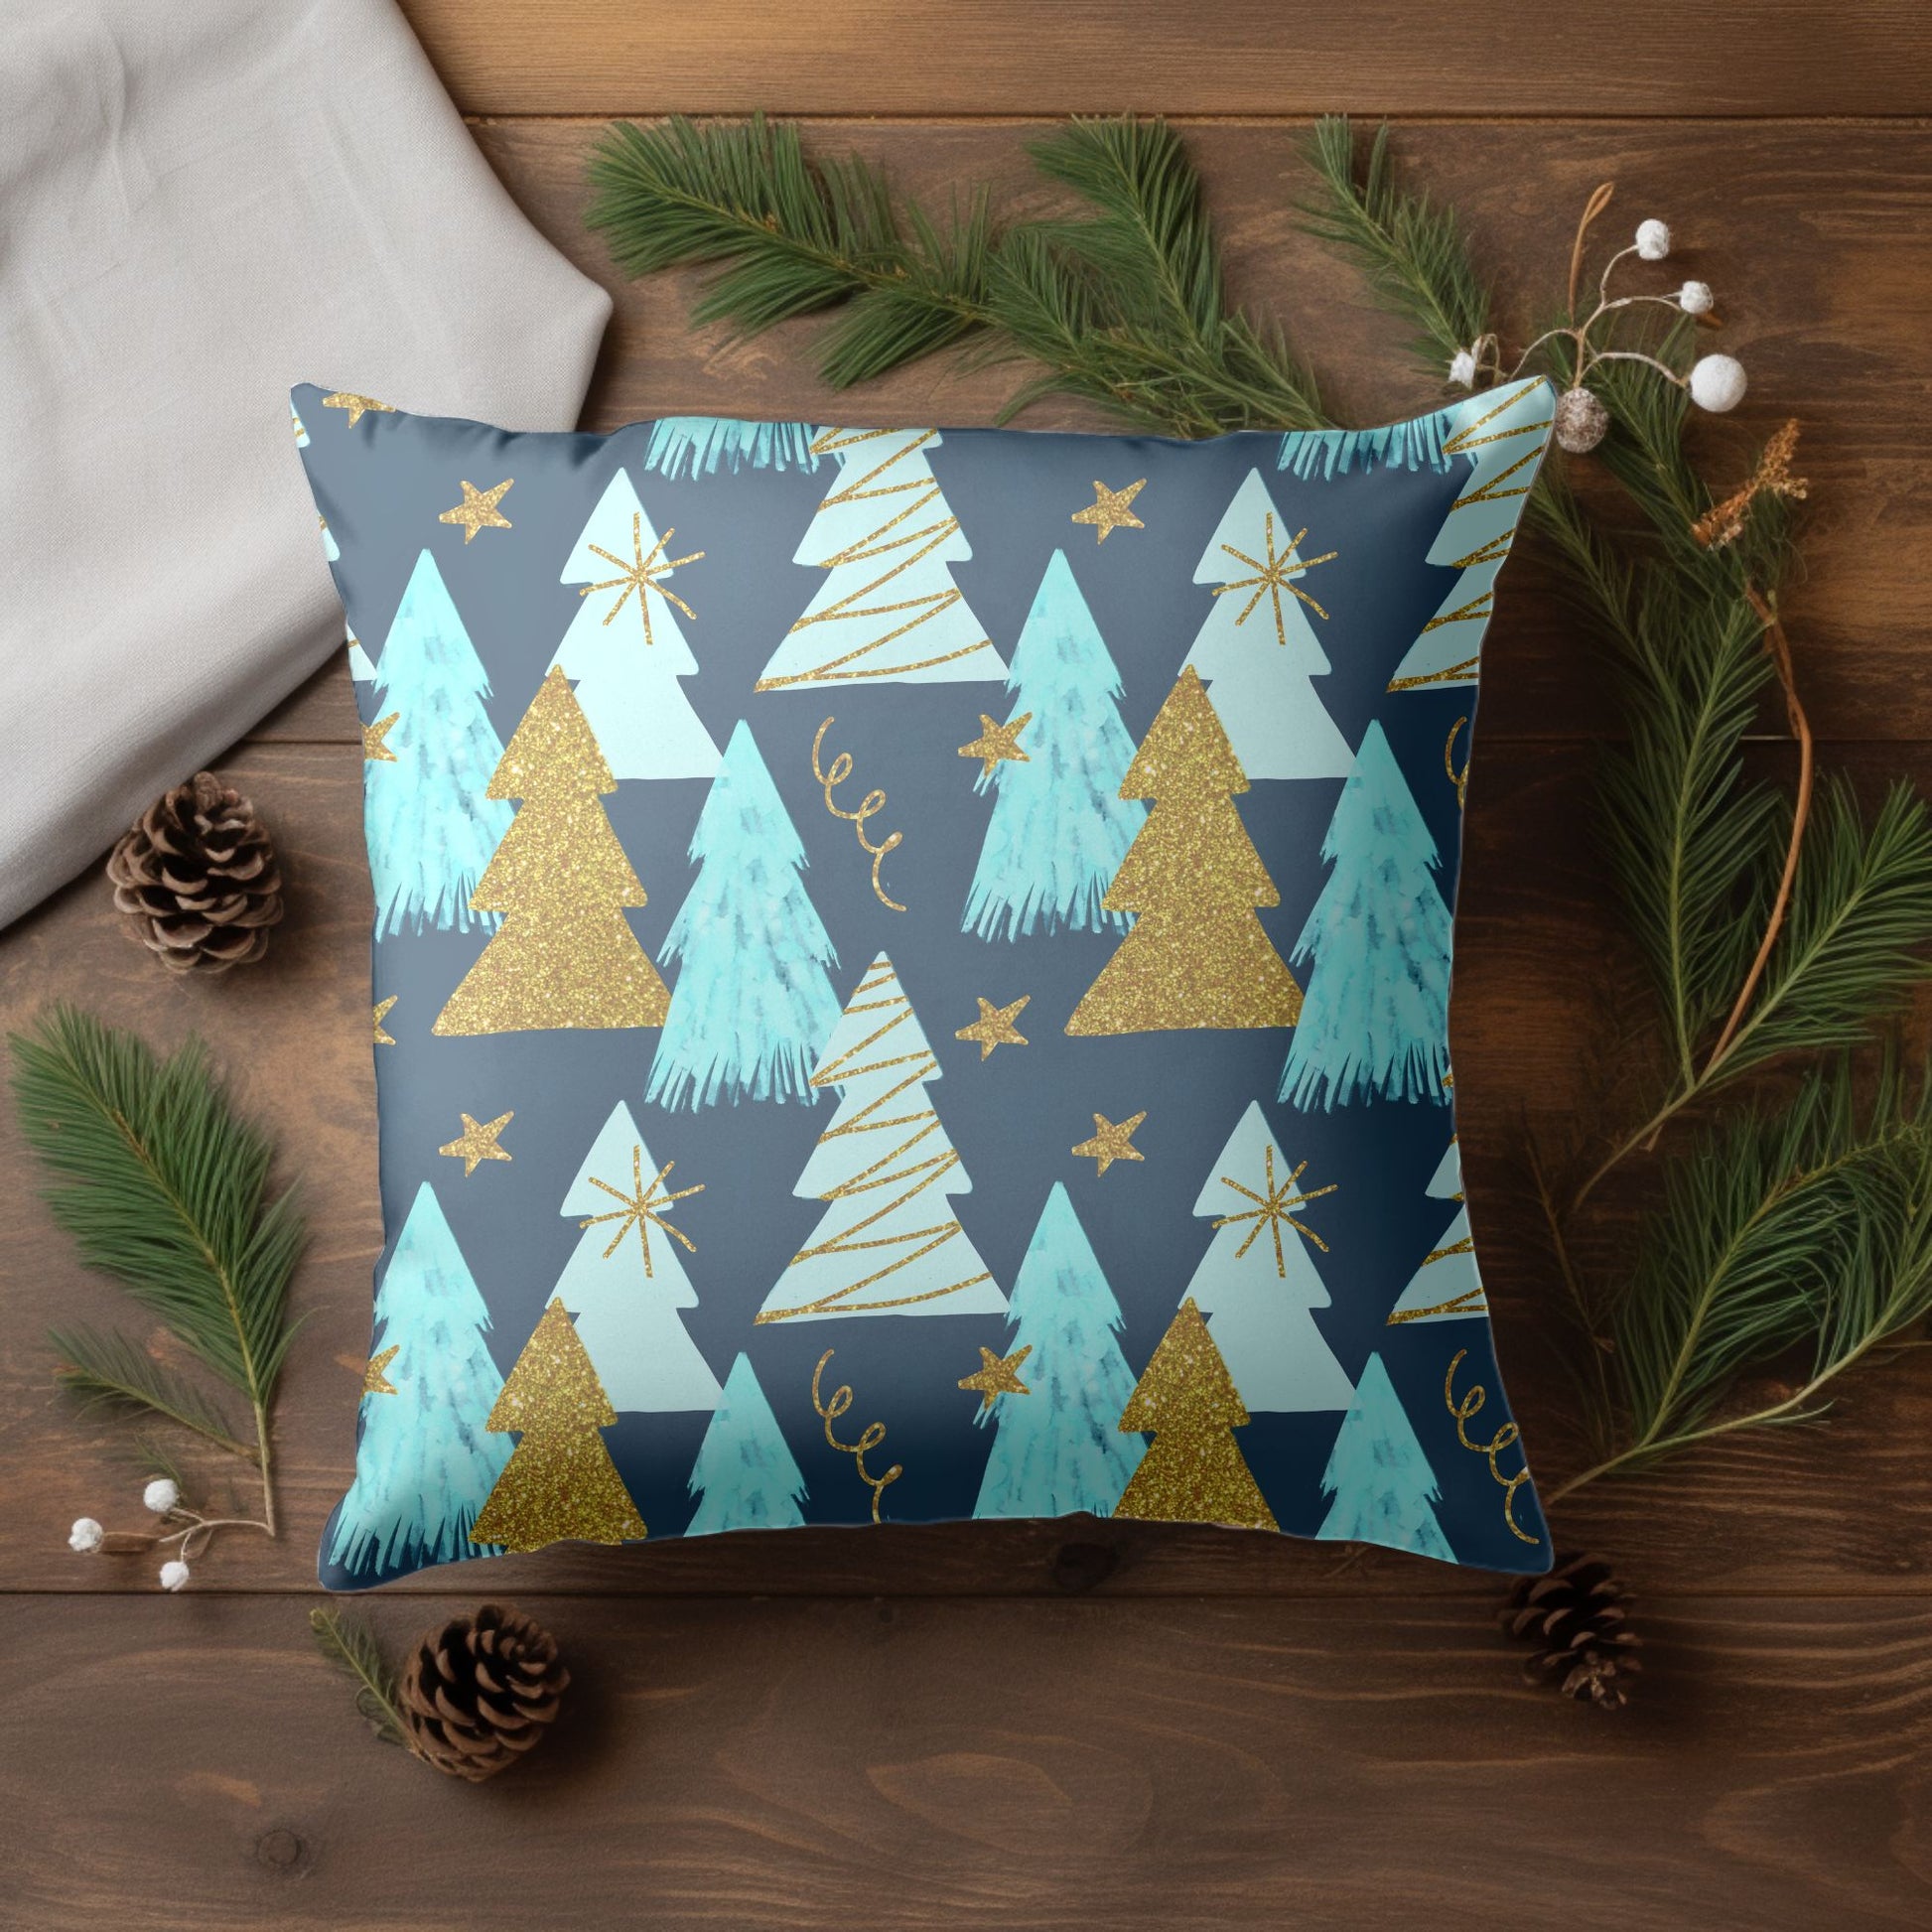 Christmas Tree Theme Pillow Cover for Seasonal Cheer